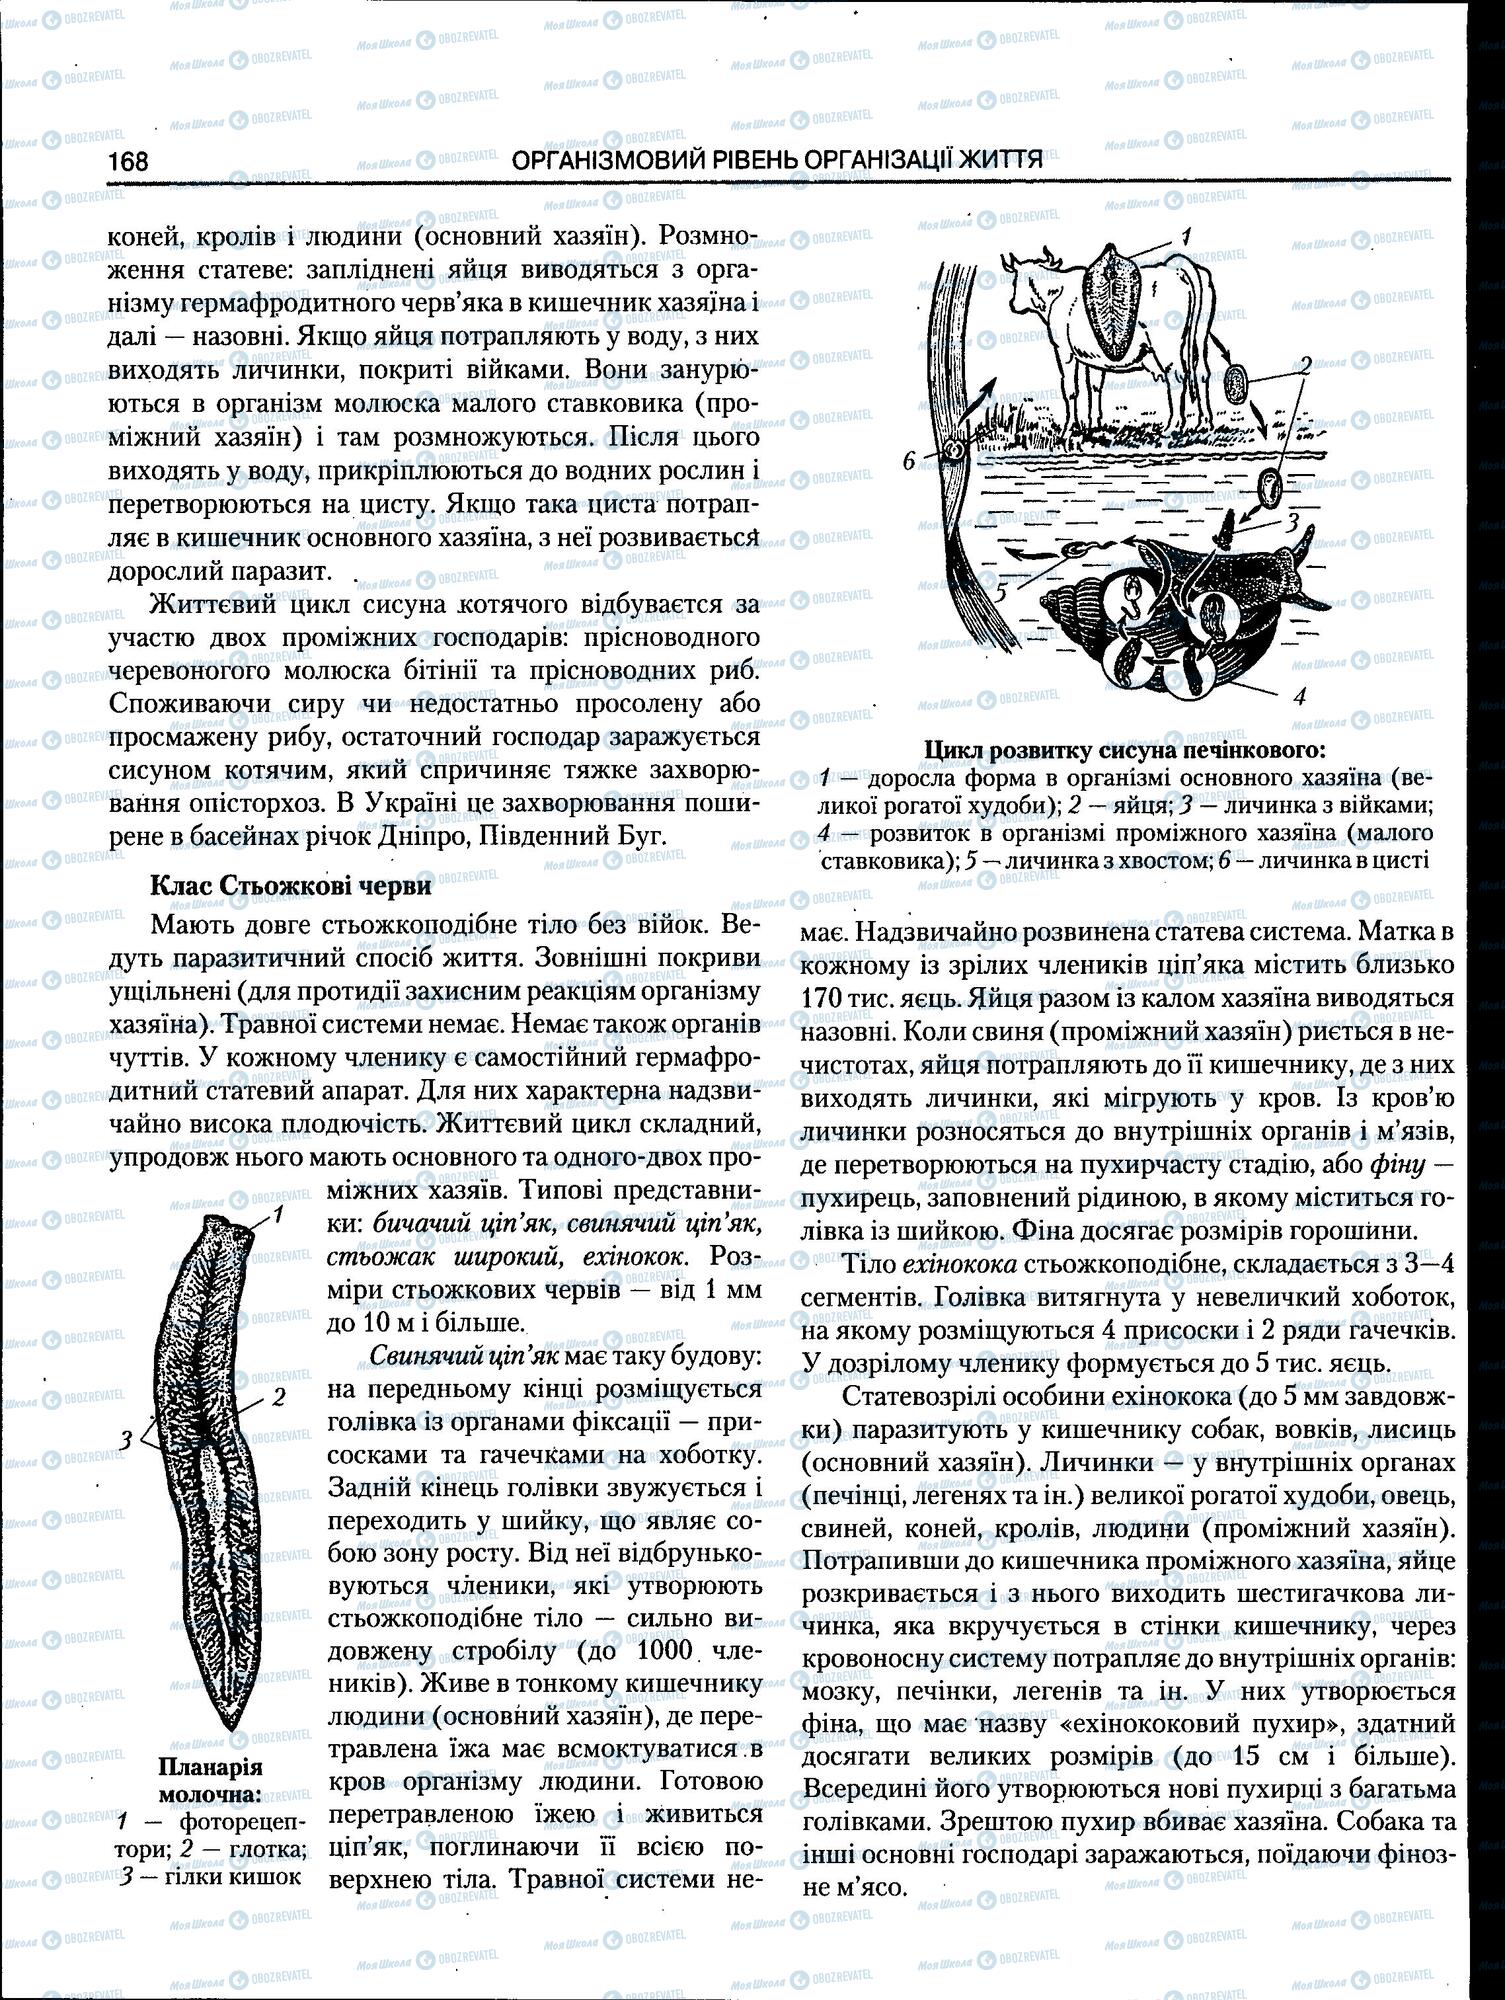 ЗНО Биология 11 класс страница 168